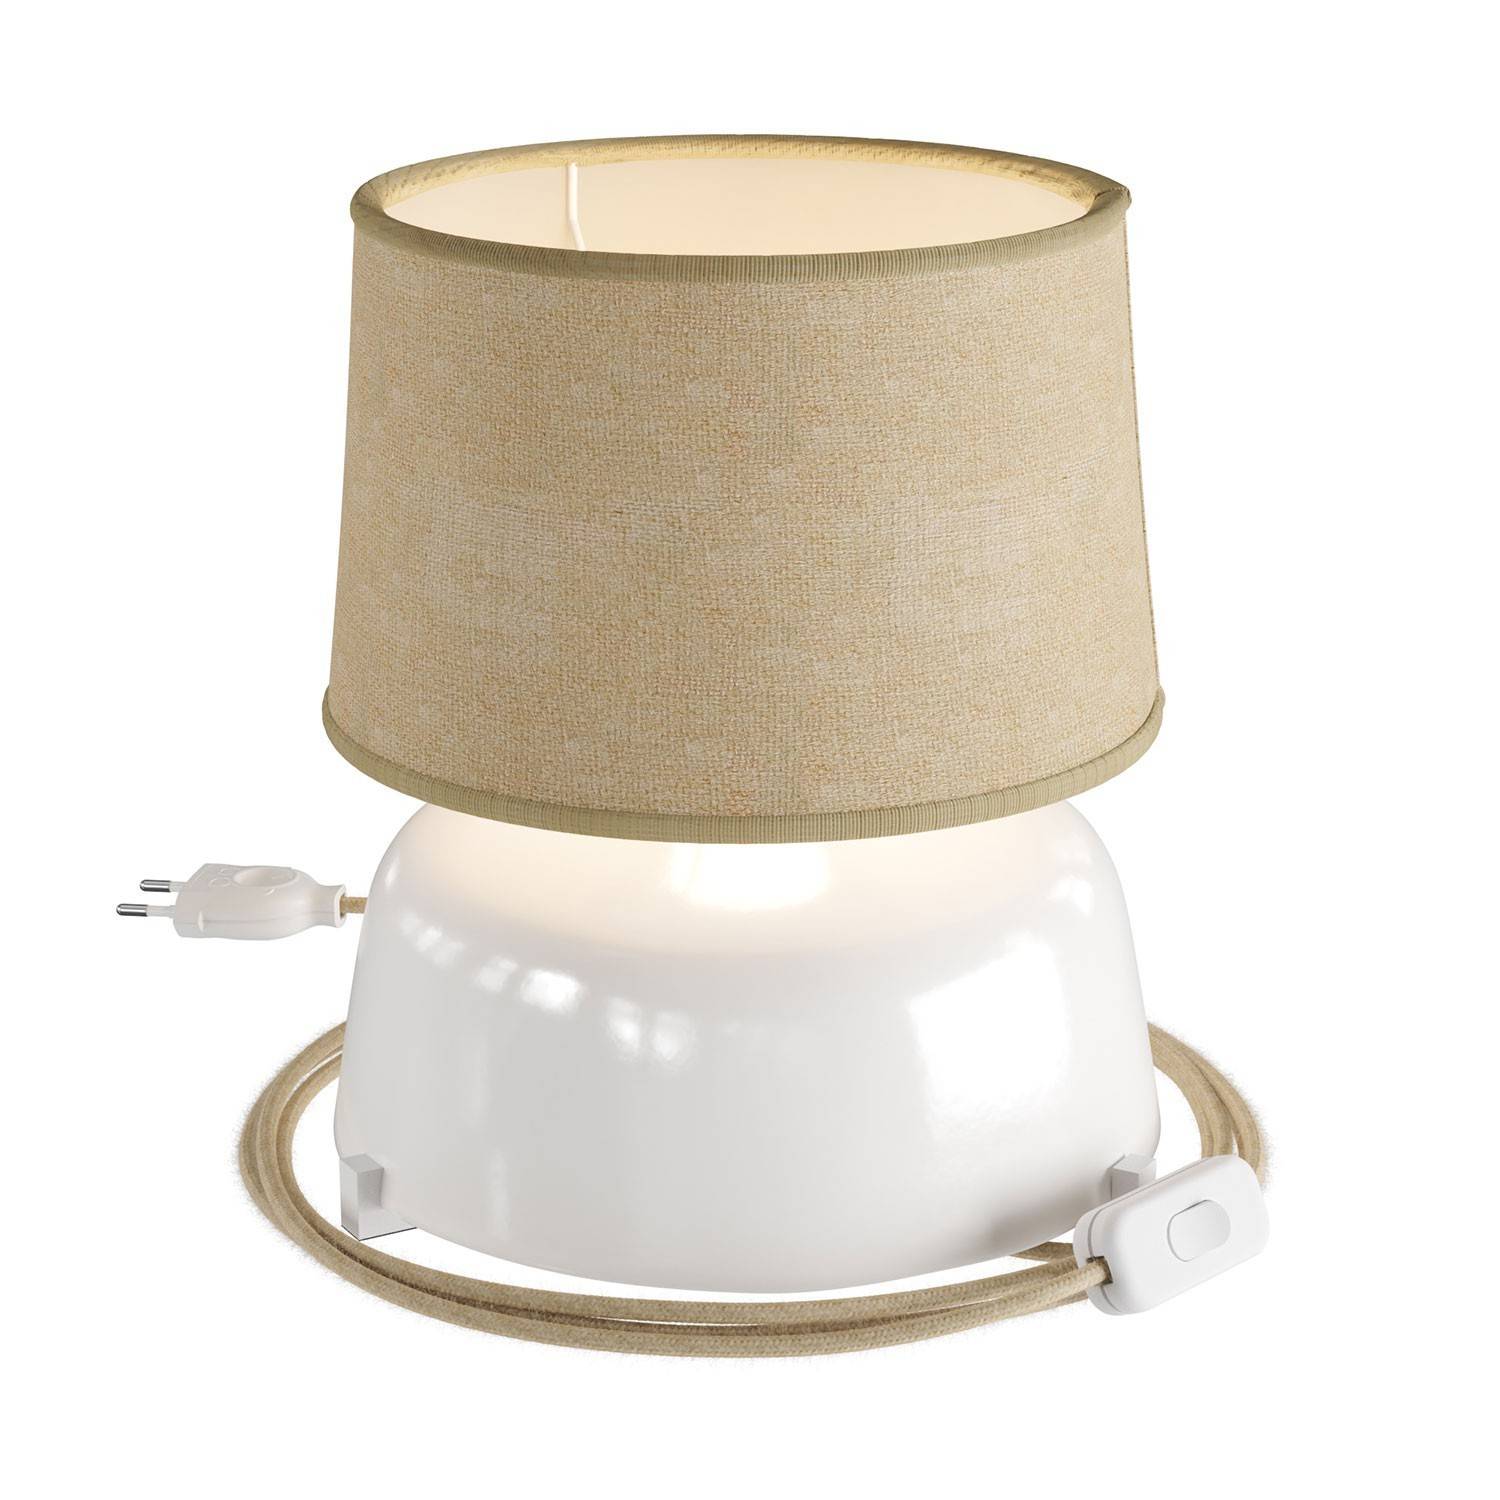 Lampa de masă ceramică Coppa cu abajur Athena, completă cu cablu textil, comutator și fișă cu 2 pini.